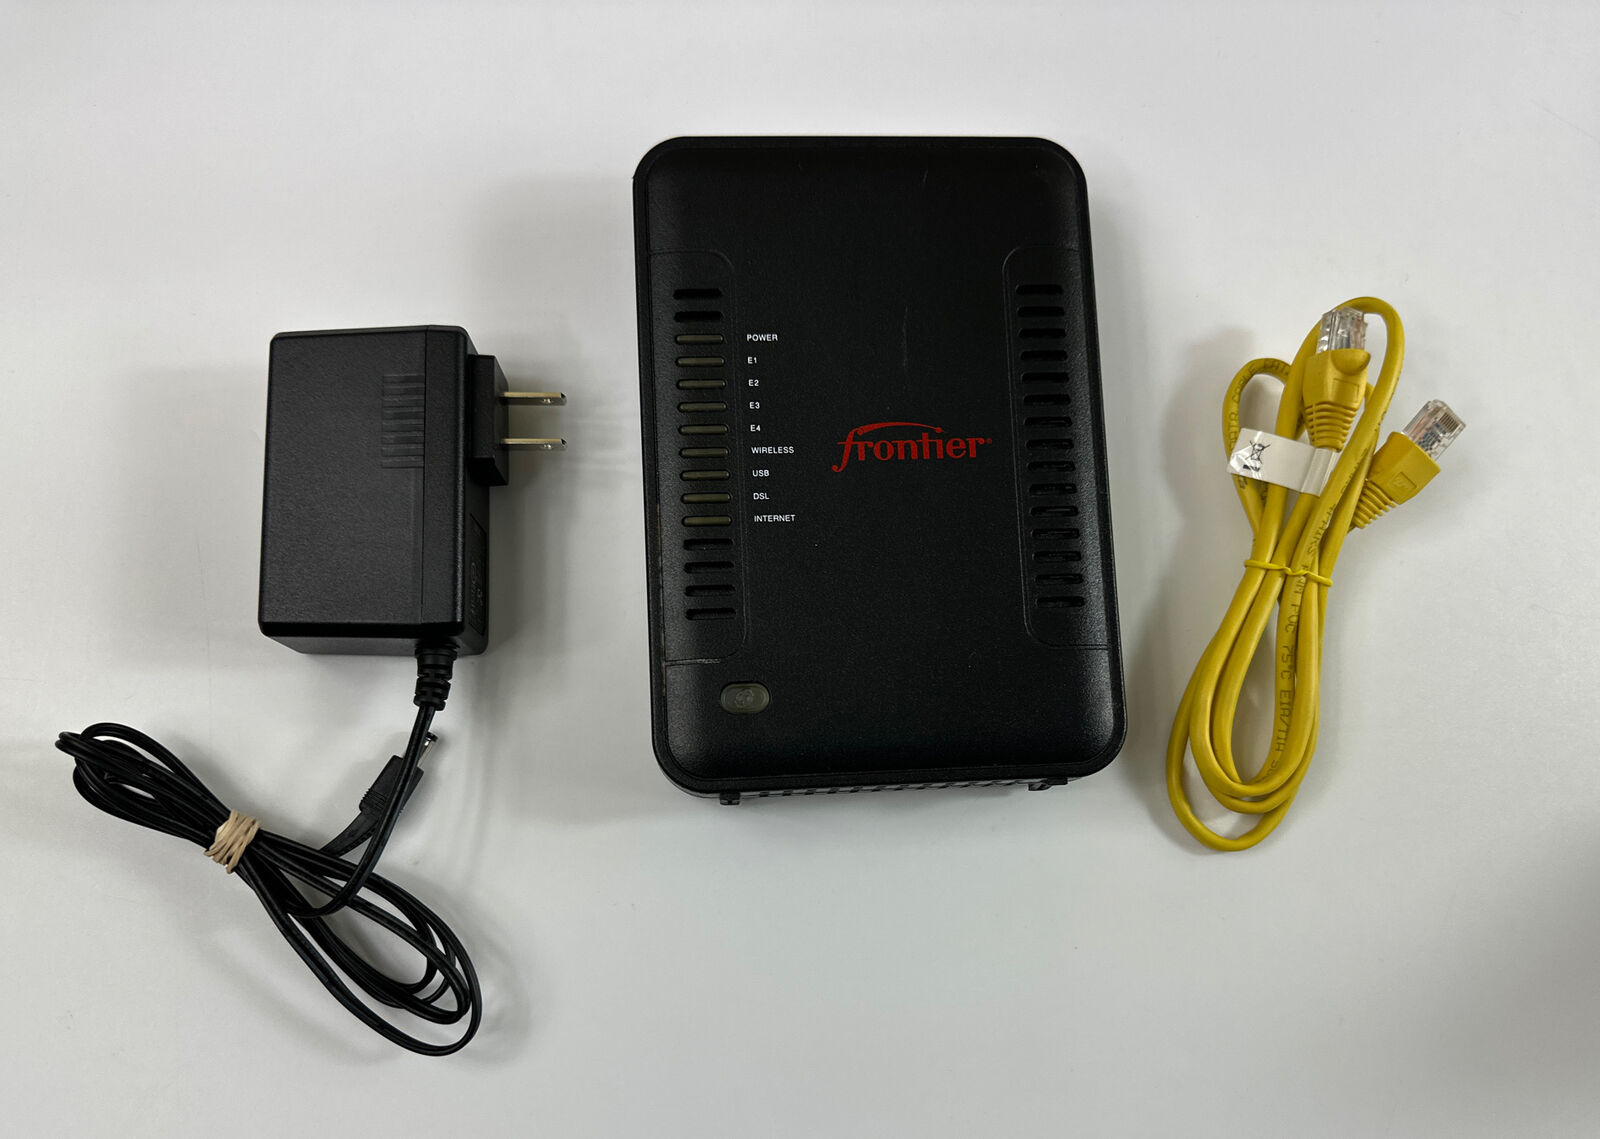 Netgear Frontier ADSL2+ Internet Modem Router Model B90-755044-15